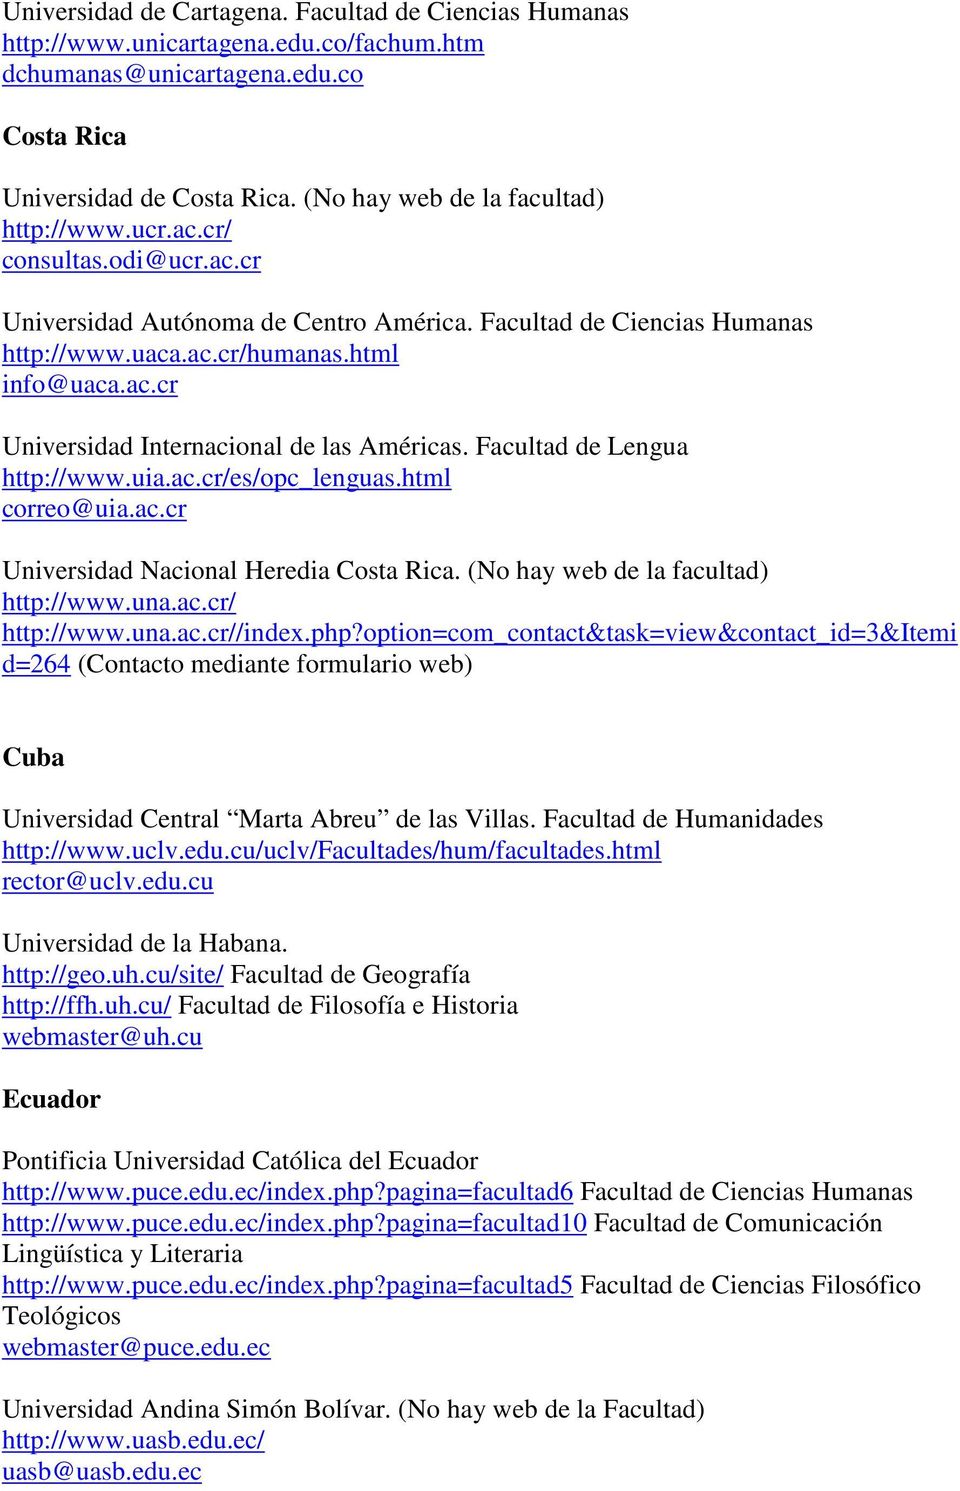 Facultad de Lengua http://www.uia.ac.cr/es/opc_lenguas.html correo@uia.ac.cr Universidad Nacional Heredia Costa Rica. (No hay web de la facultad) http://www.una.ac.cr/ http://www.una.ac.cr//index.php?